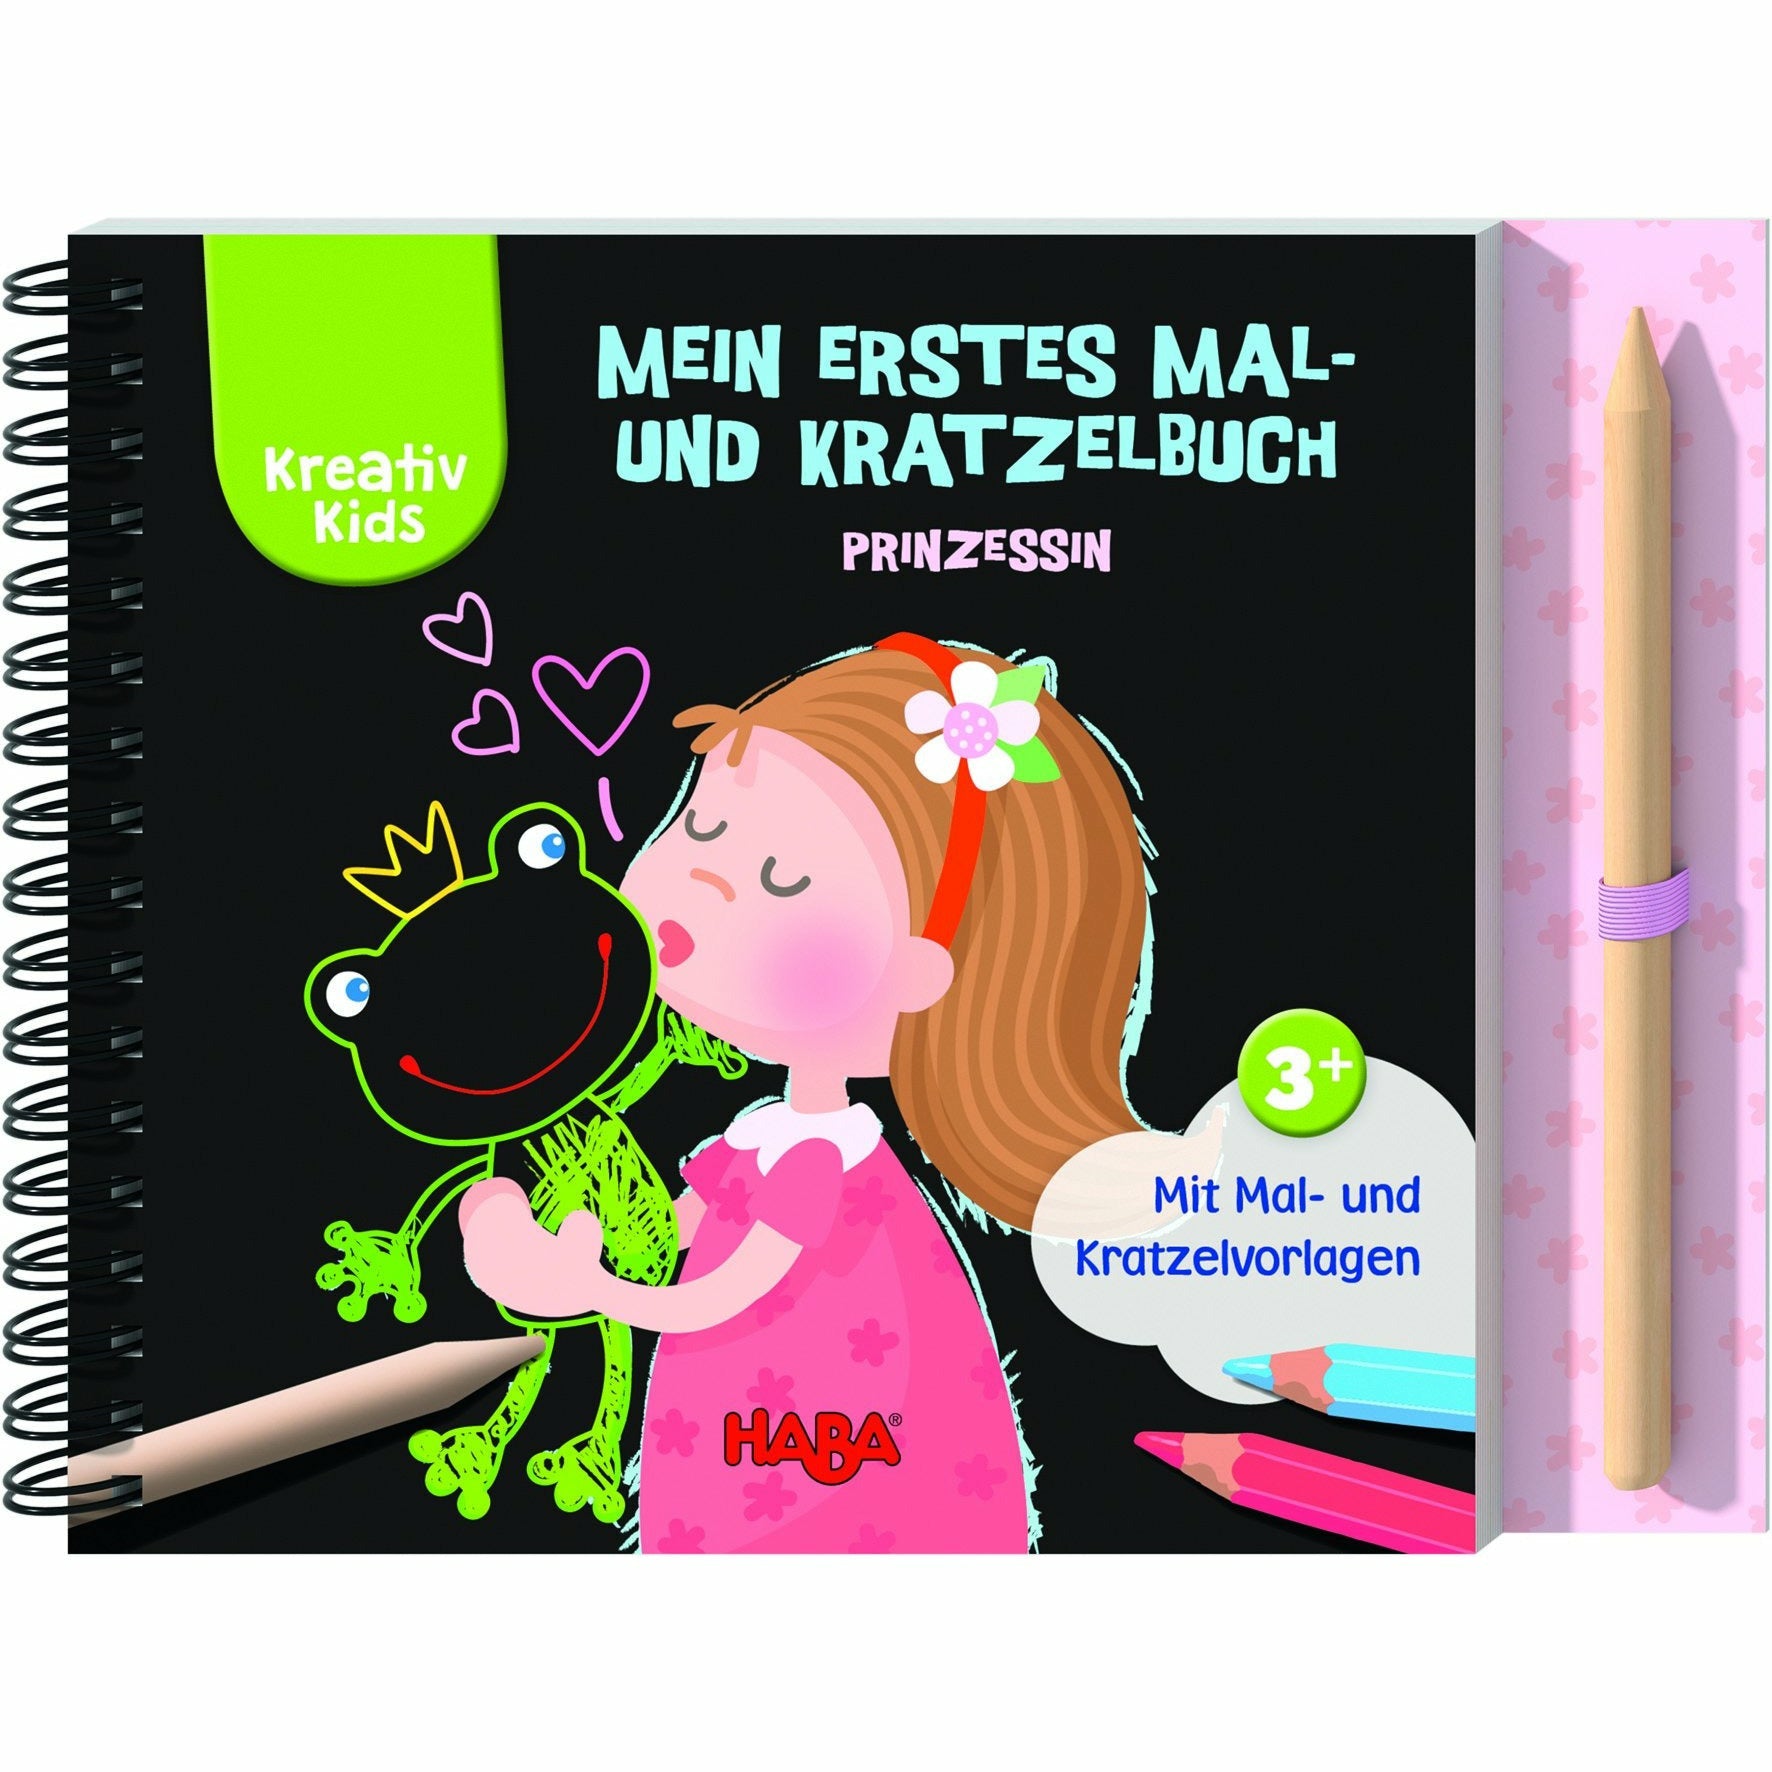 HABA | Kreativ Kids – Mein erstes Mal- und Kratzelbuch Prinzessin